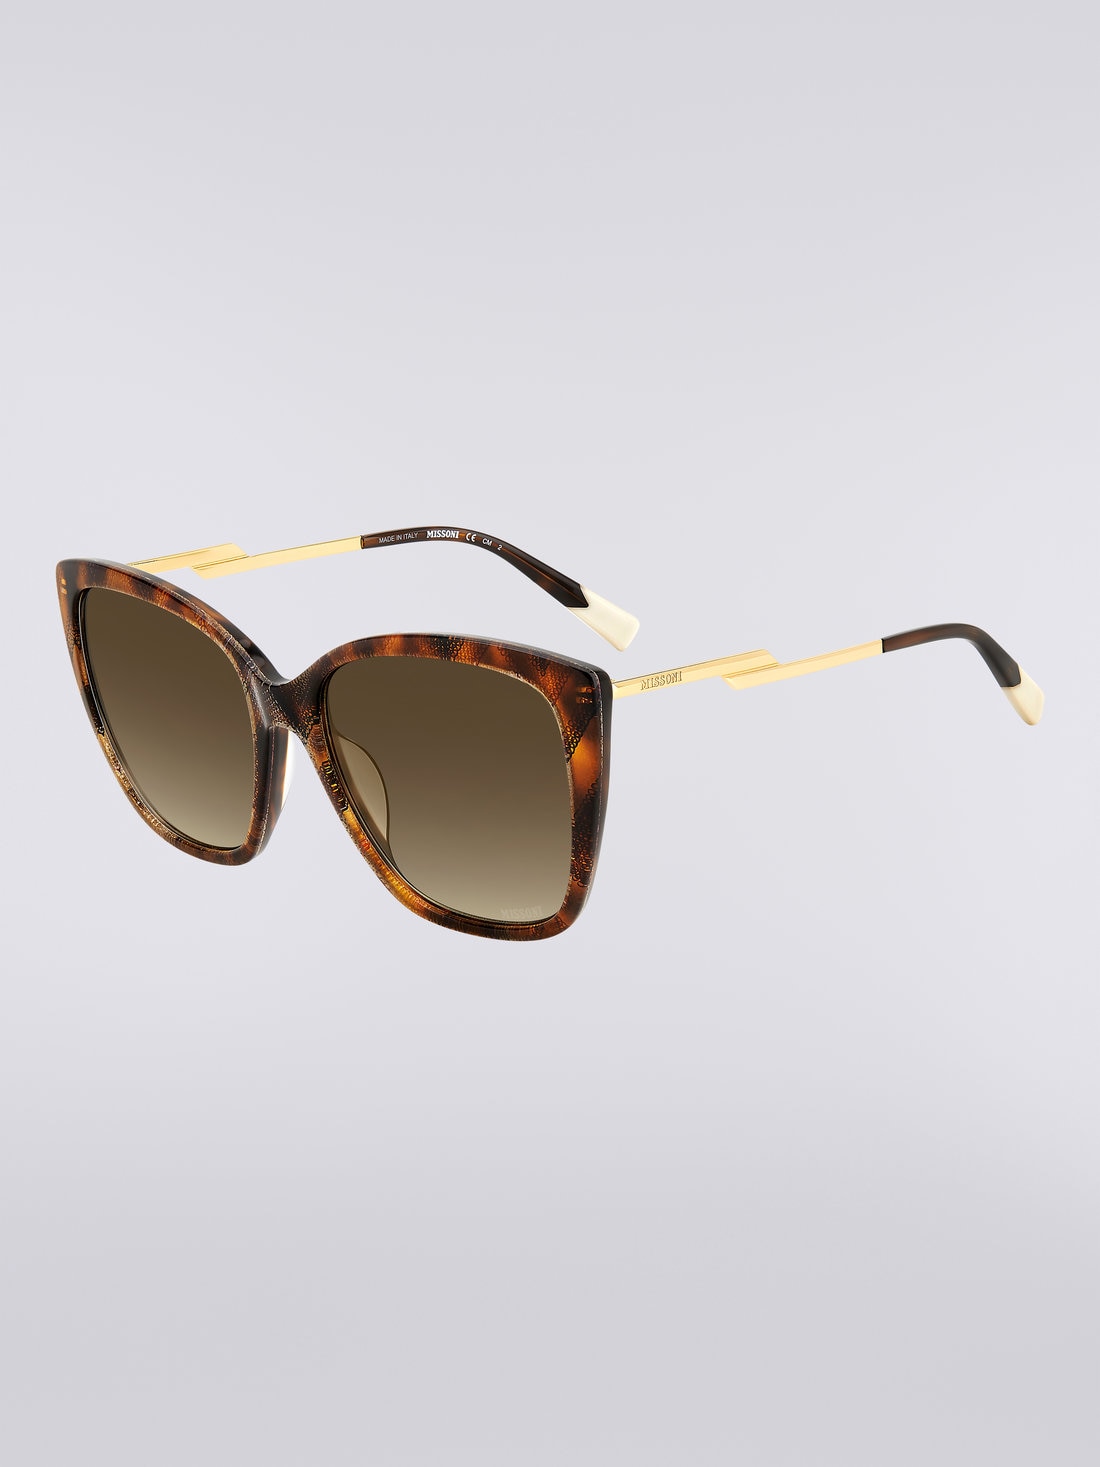 Missoni Dna Acetate Sunglasses, Multicoloured  - 8051575840241 - 1